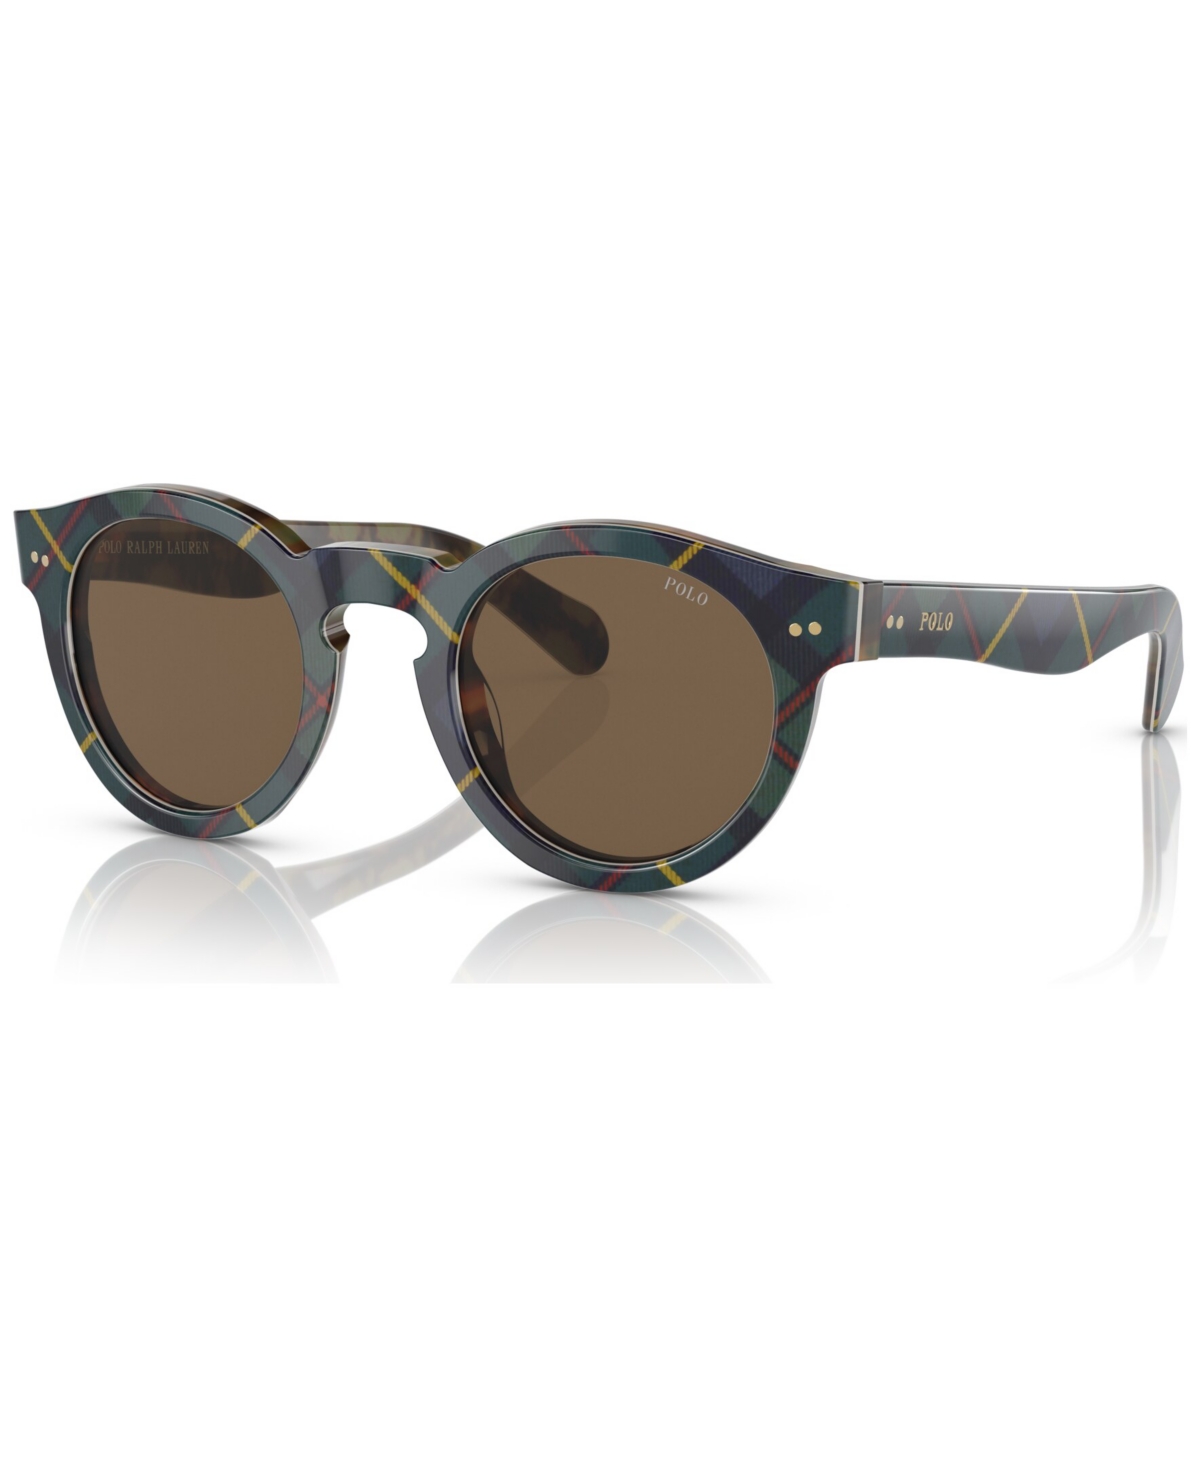 Polo Ralph Lauren Men's Sunglasses Ph4165 In Gordon Tartan On Tortoise